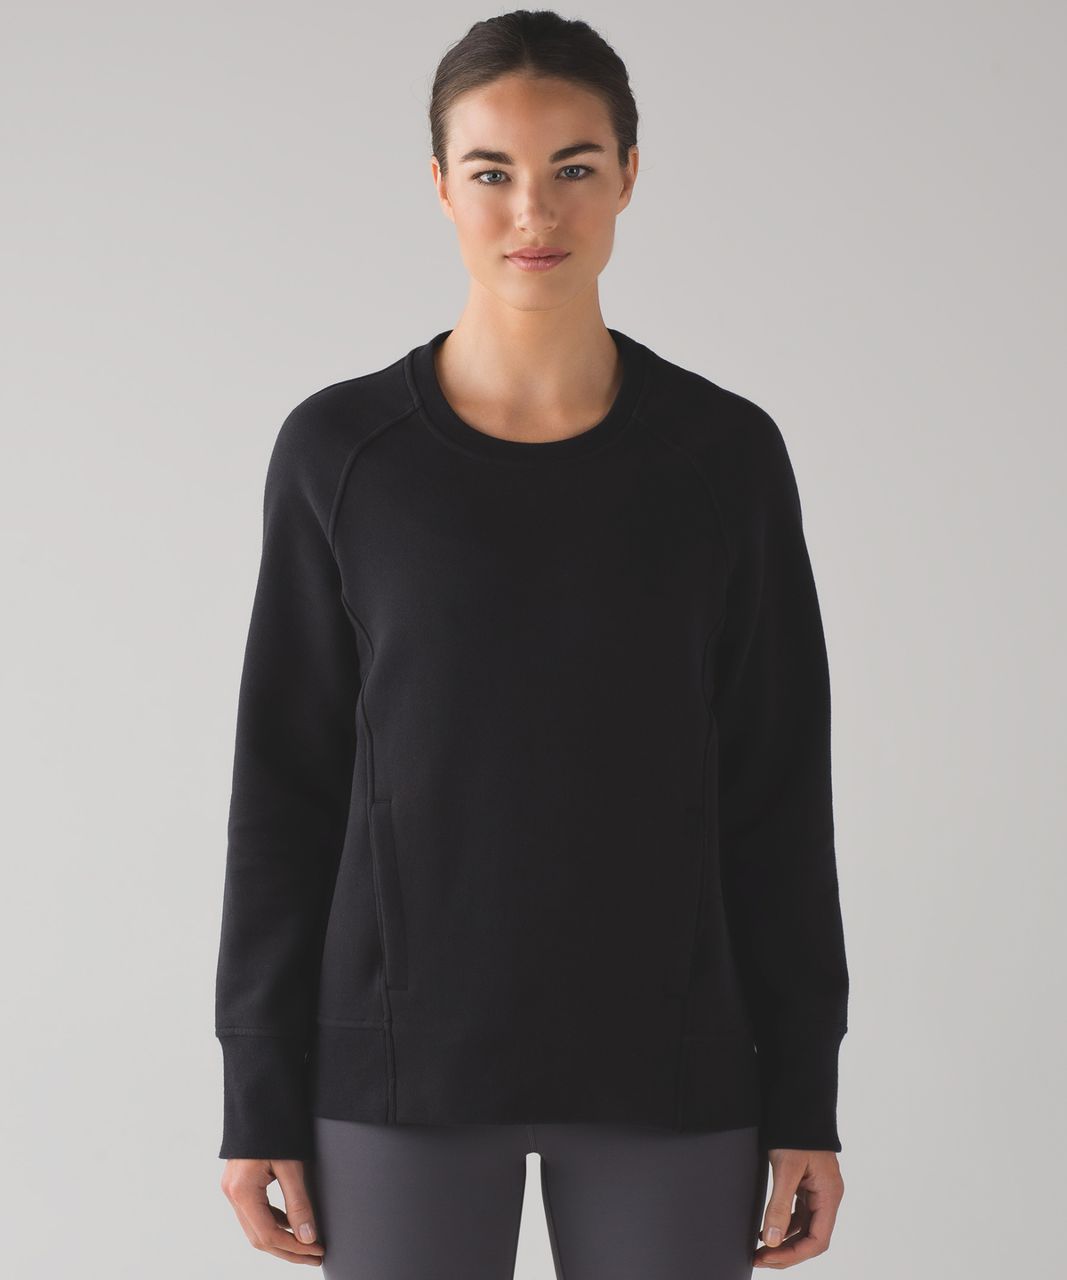 lululemon black sweatshirt